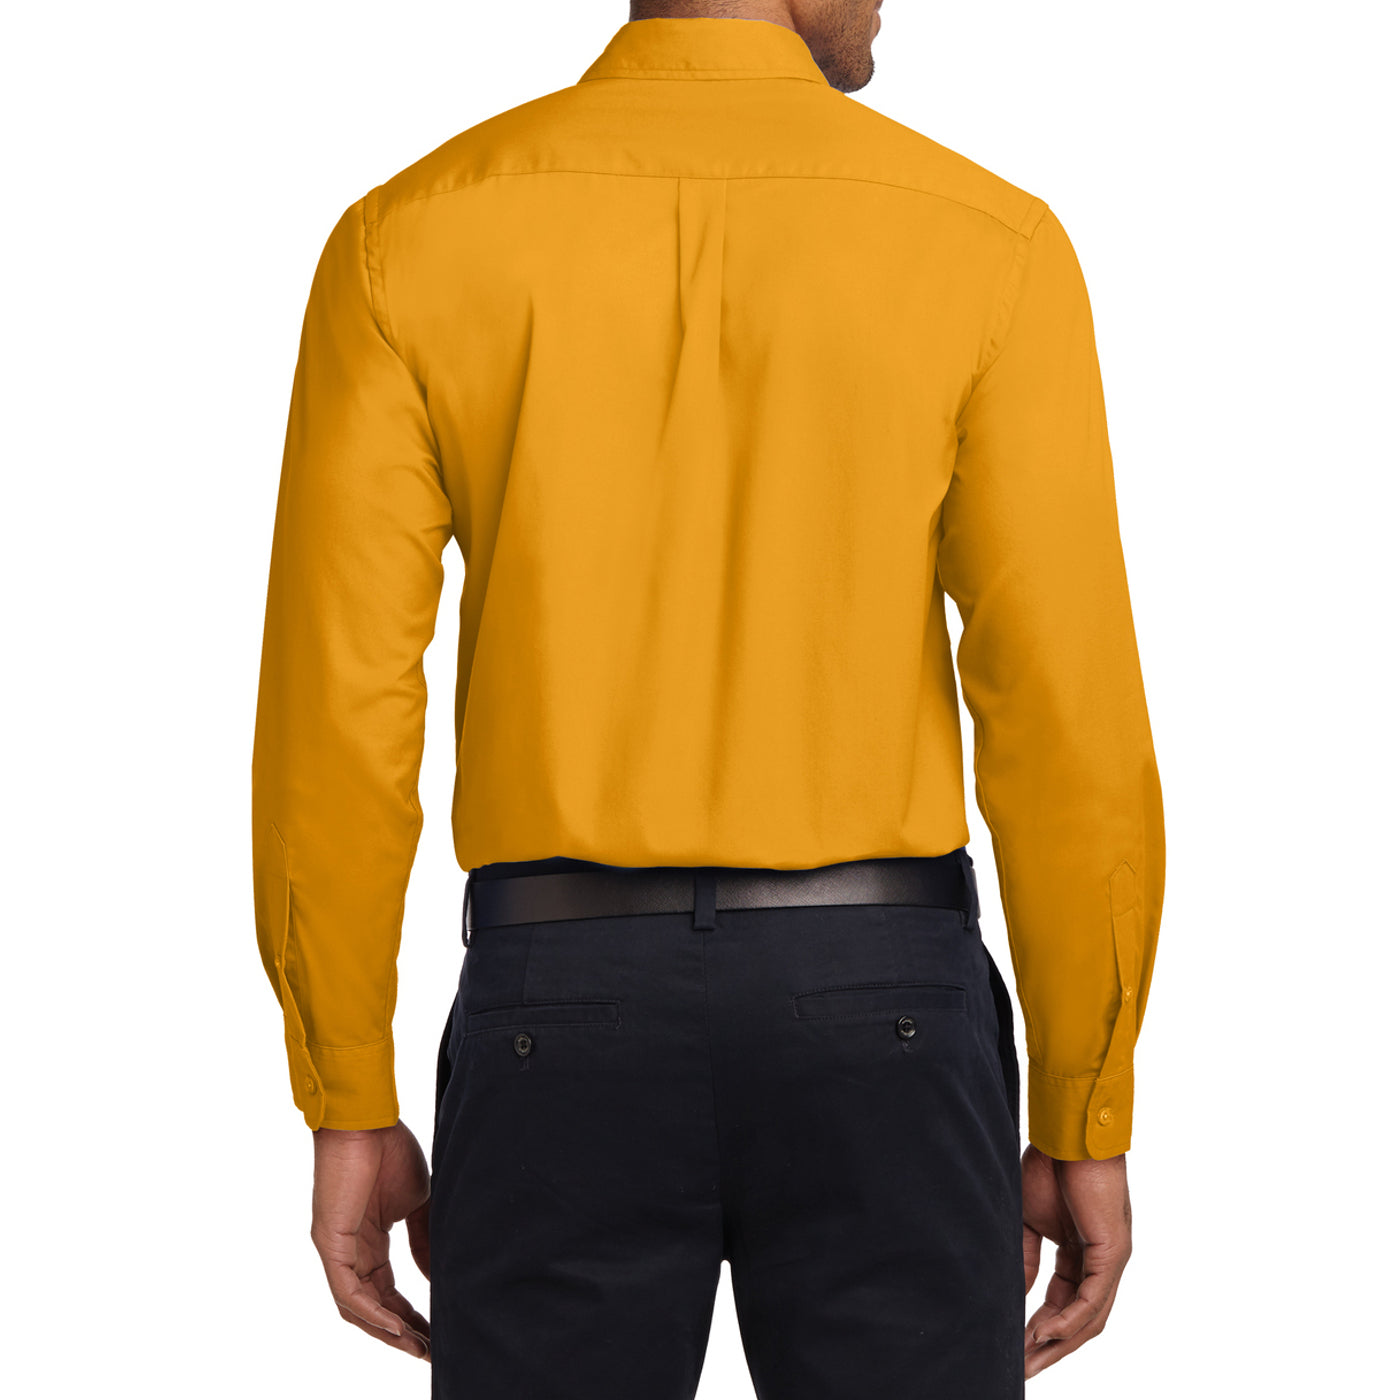 Men's Long Sleeve Easy Care Shirt - Athletic Gold/ Light Stone - Back